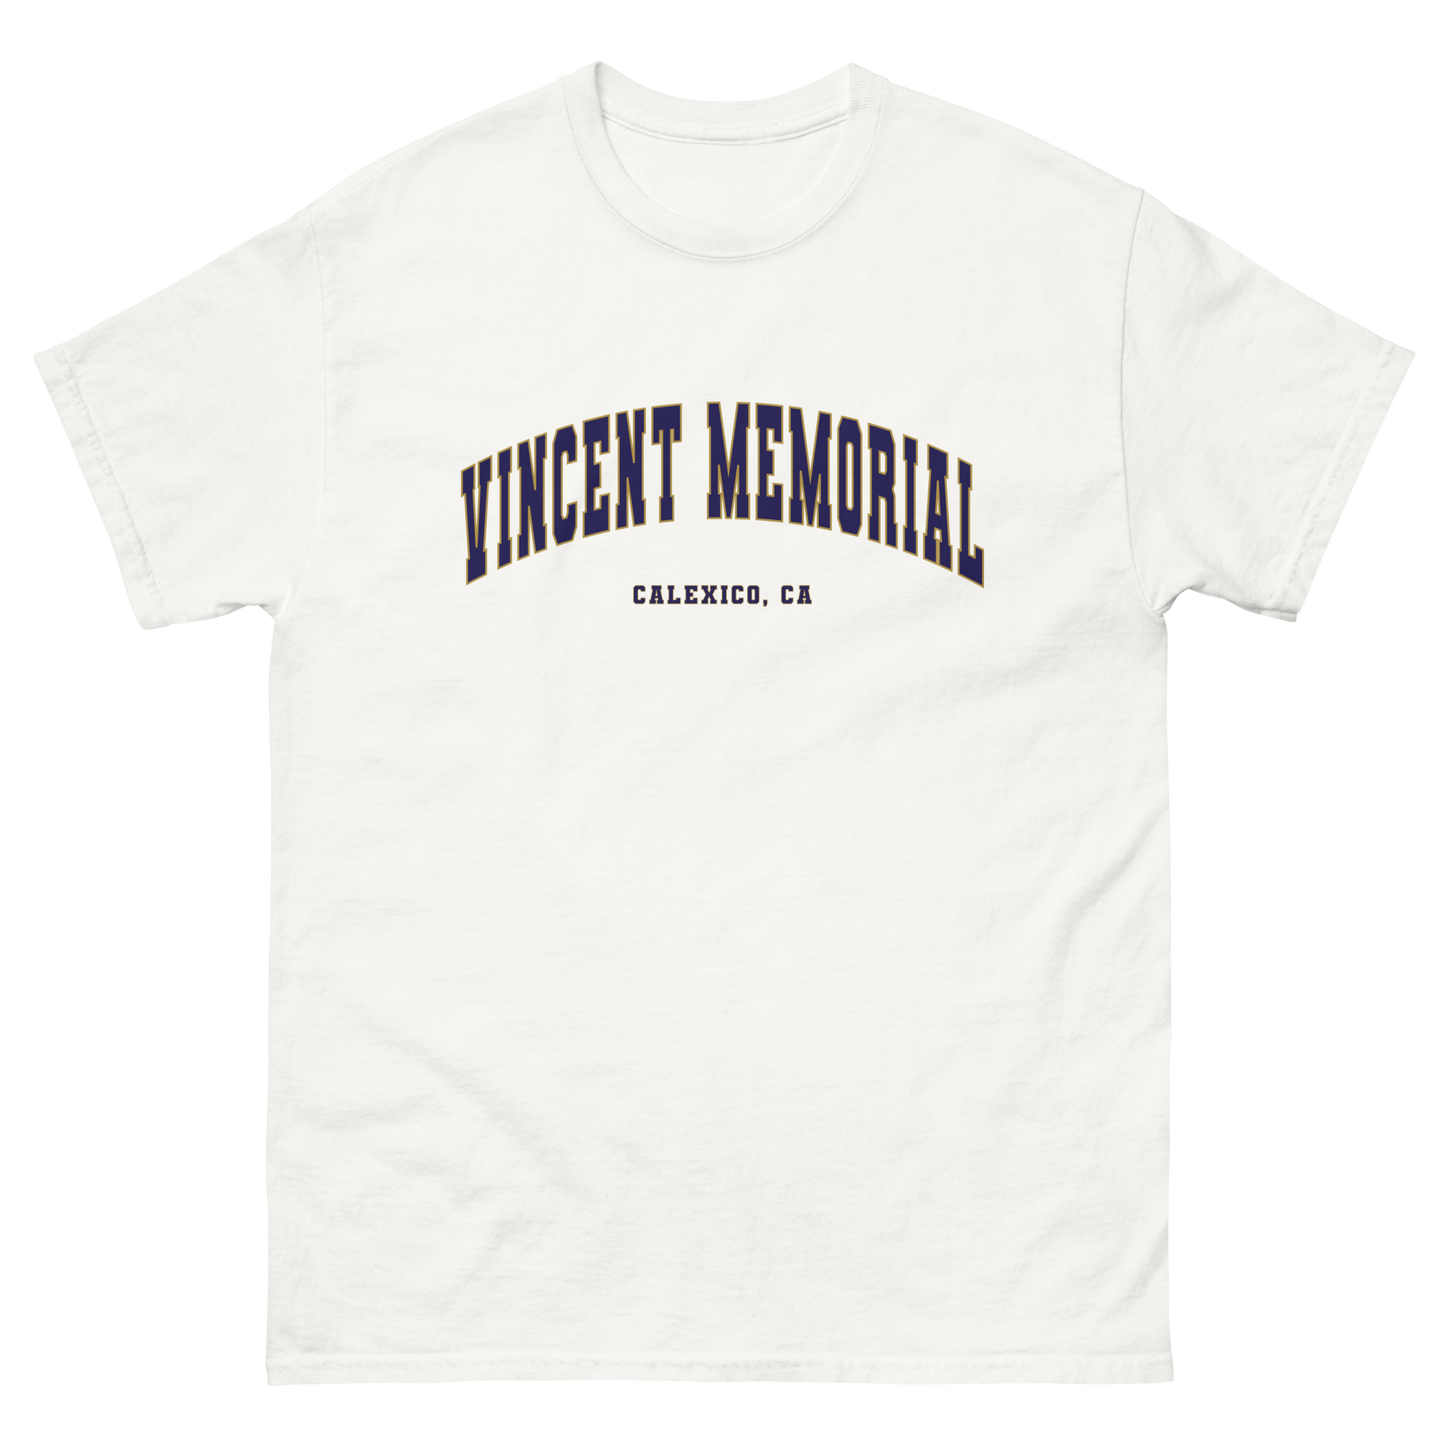 Vincent Memorial Men's classic tee